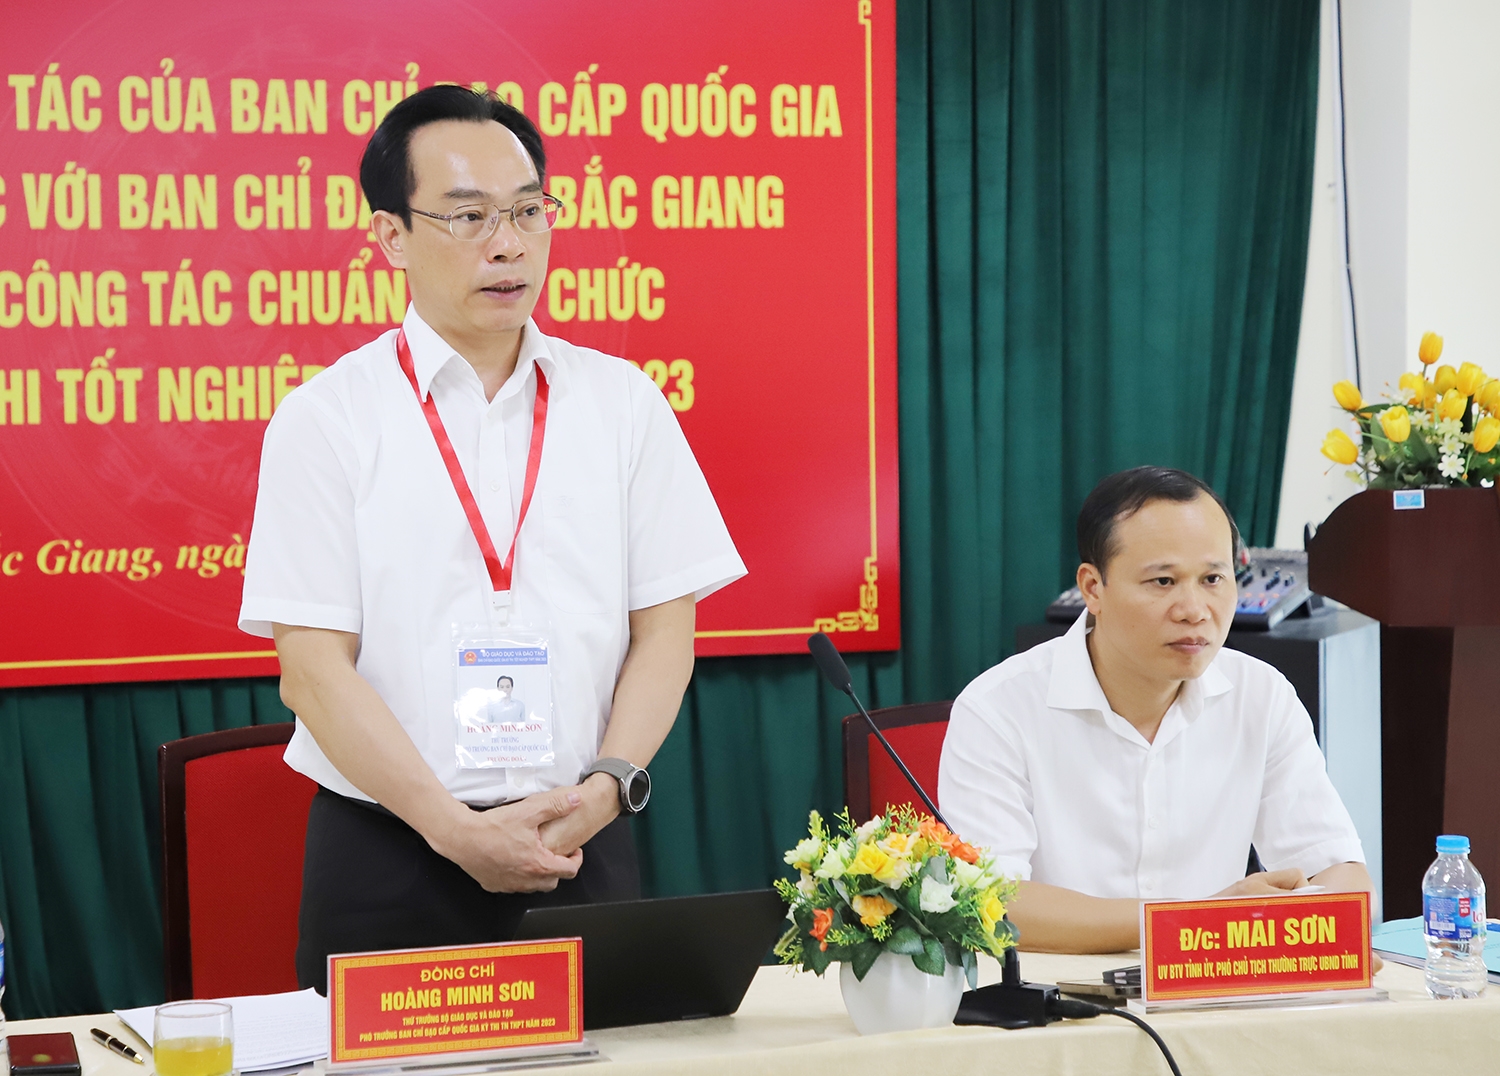 Thứ trưởng Bộ GD&ĐT Hoàng Minh Sơn đánh giá cao công tác chuẩn bị các điều kiện tổ chức kỳ thi tốt nghiệp THPT của tỉnh Bắc Giang